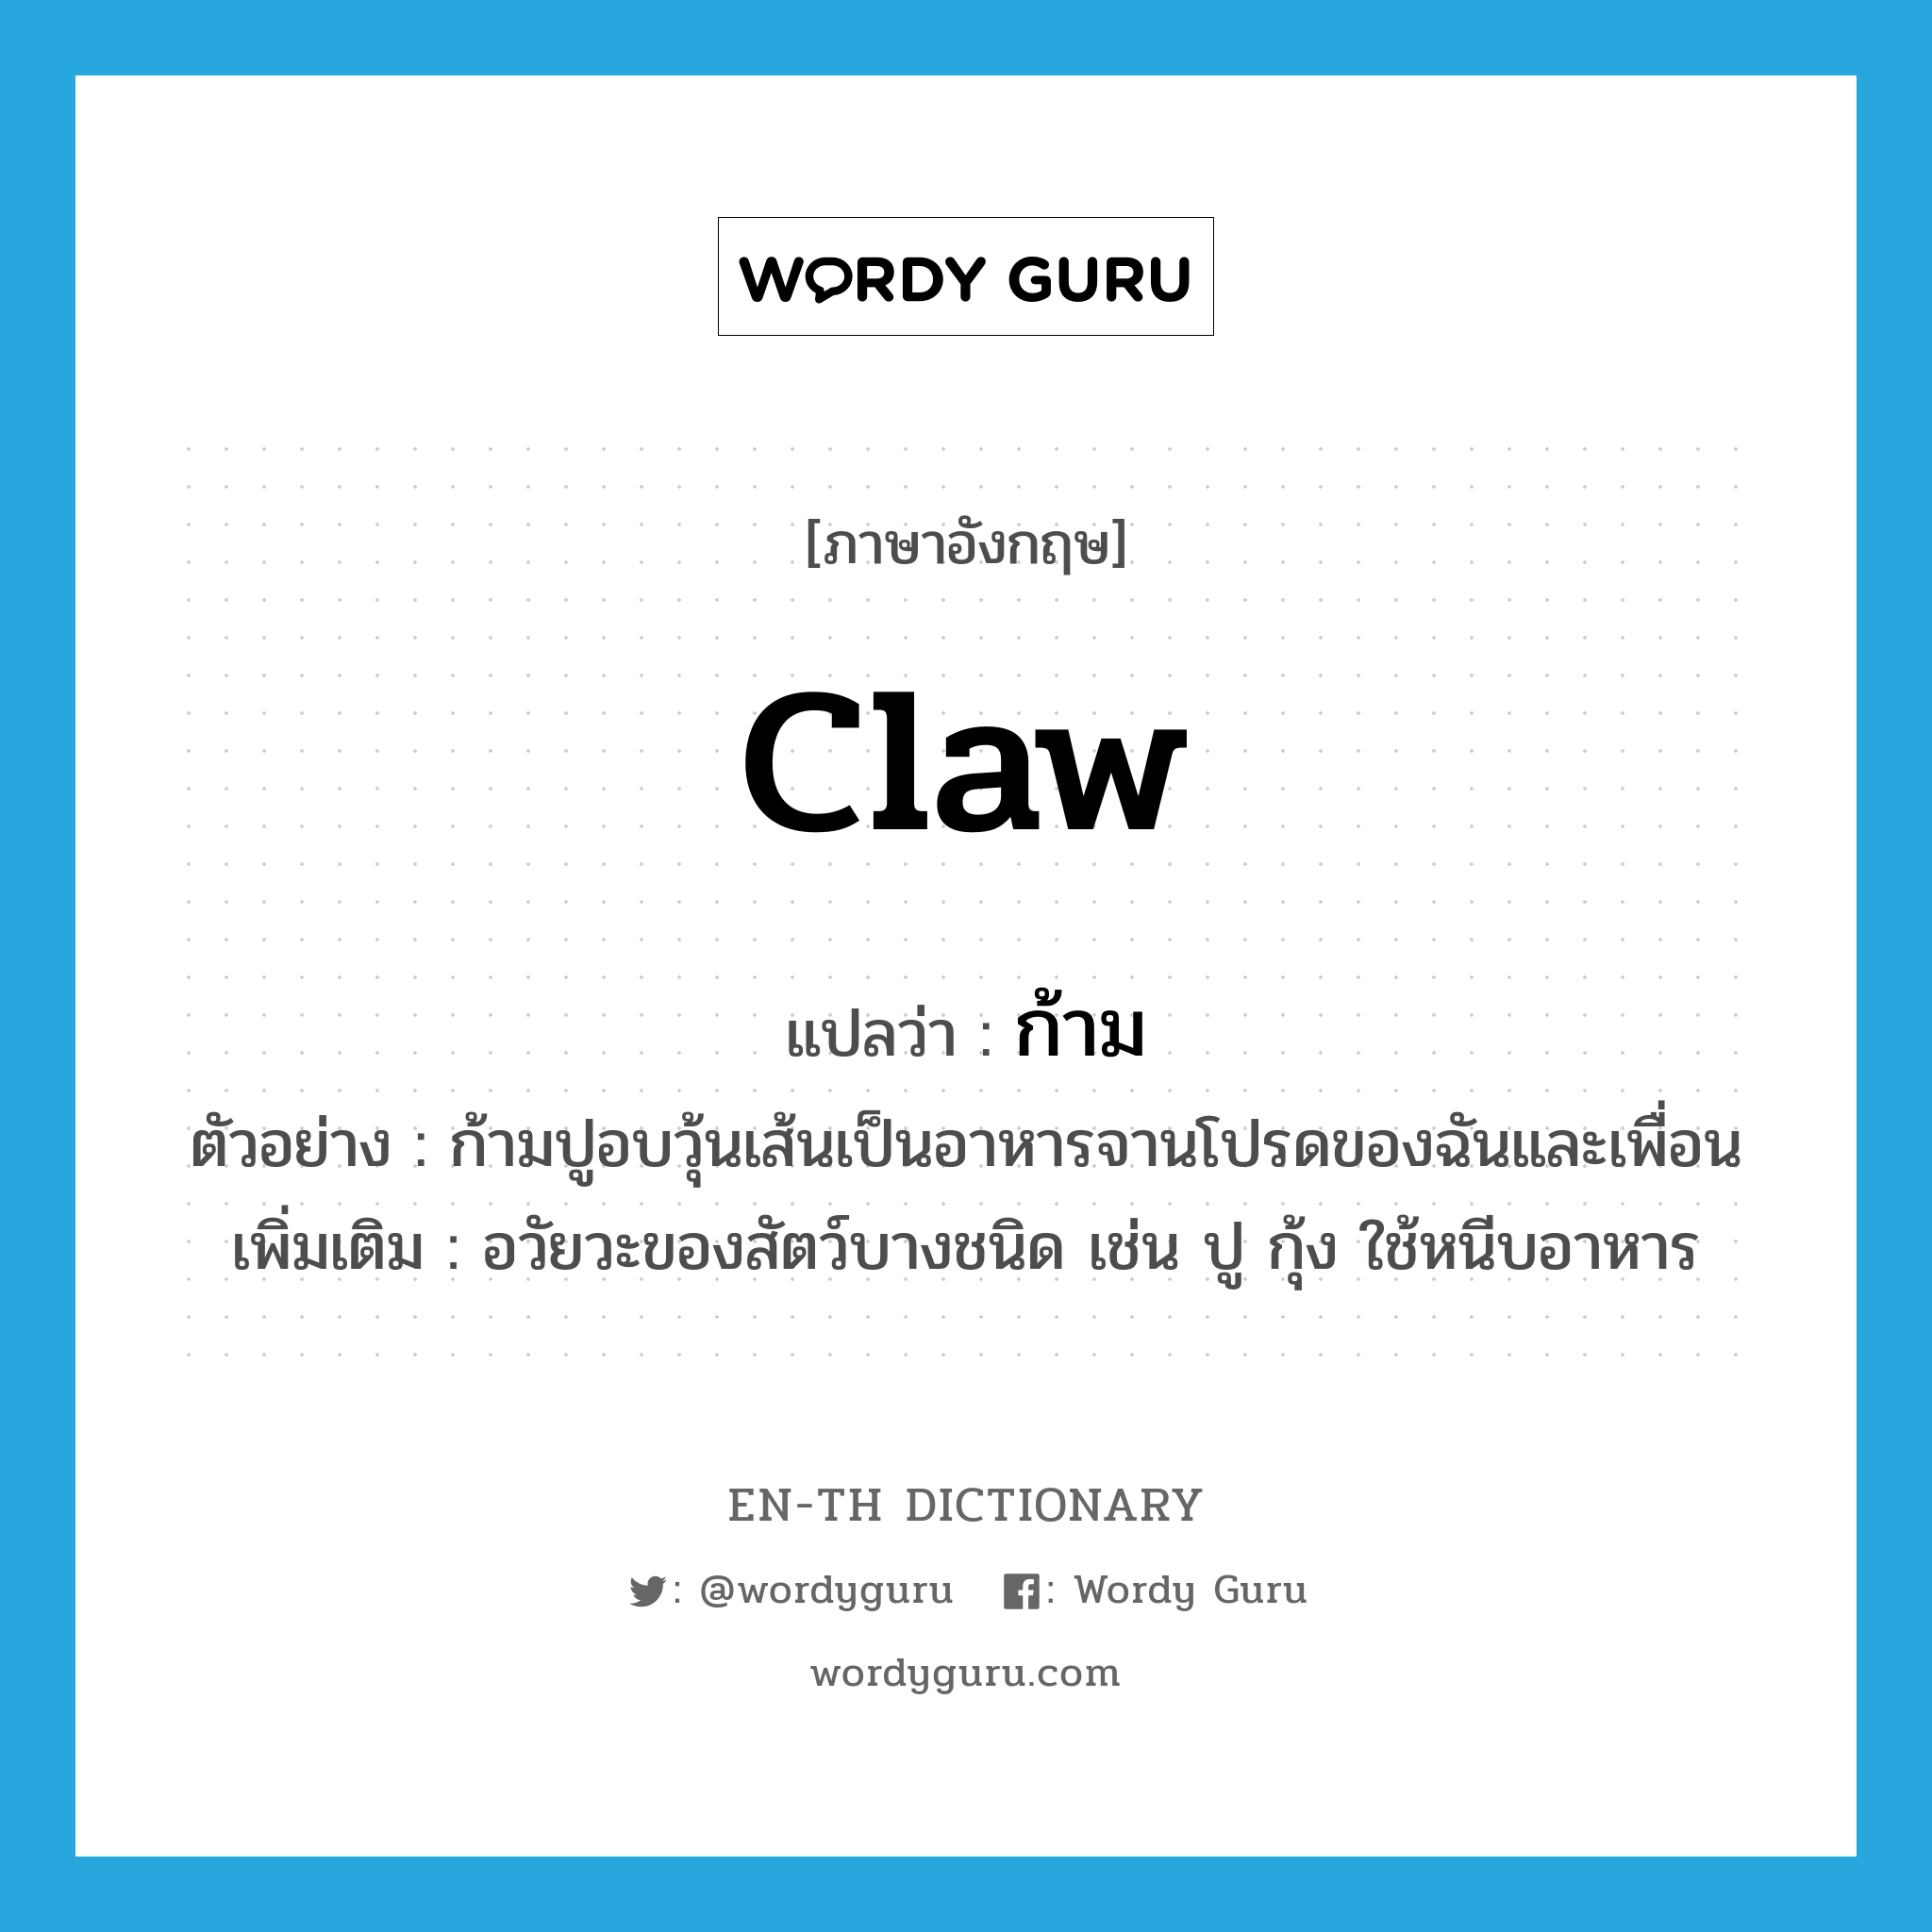 claw แปลว่า?, คำศัพท์ภาษาอังกฤษ claw แปลว่า ก้าม ประเภท N ตัวอย่าง ก้ามปูอบวุ้นเส้นเป็นอาหารจานโปรดของฉันและเพื่อน เพิ่มเติม อวัยวะของสัตว์บางชนิด เช่น ปู กุ้ง ใช้หนีบอาหาร หมวด N